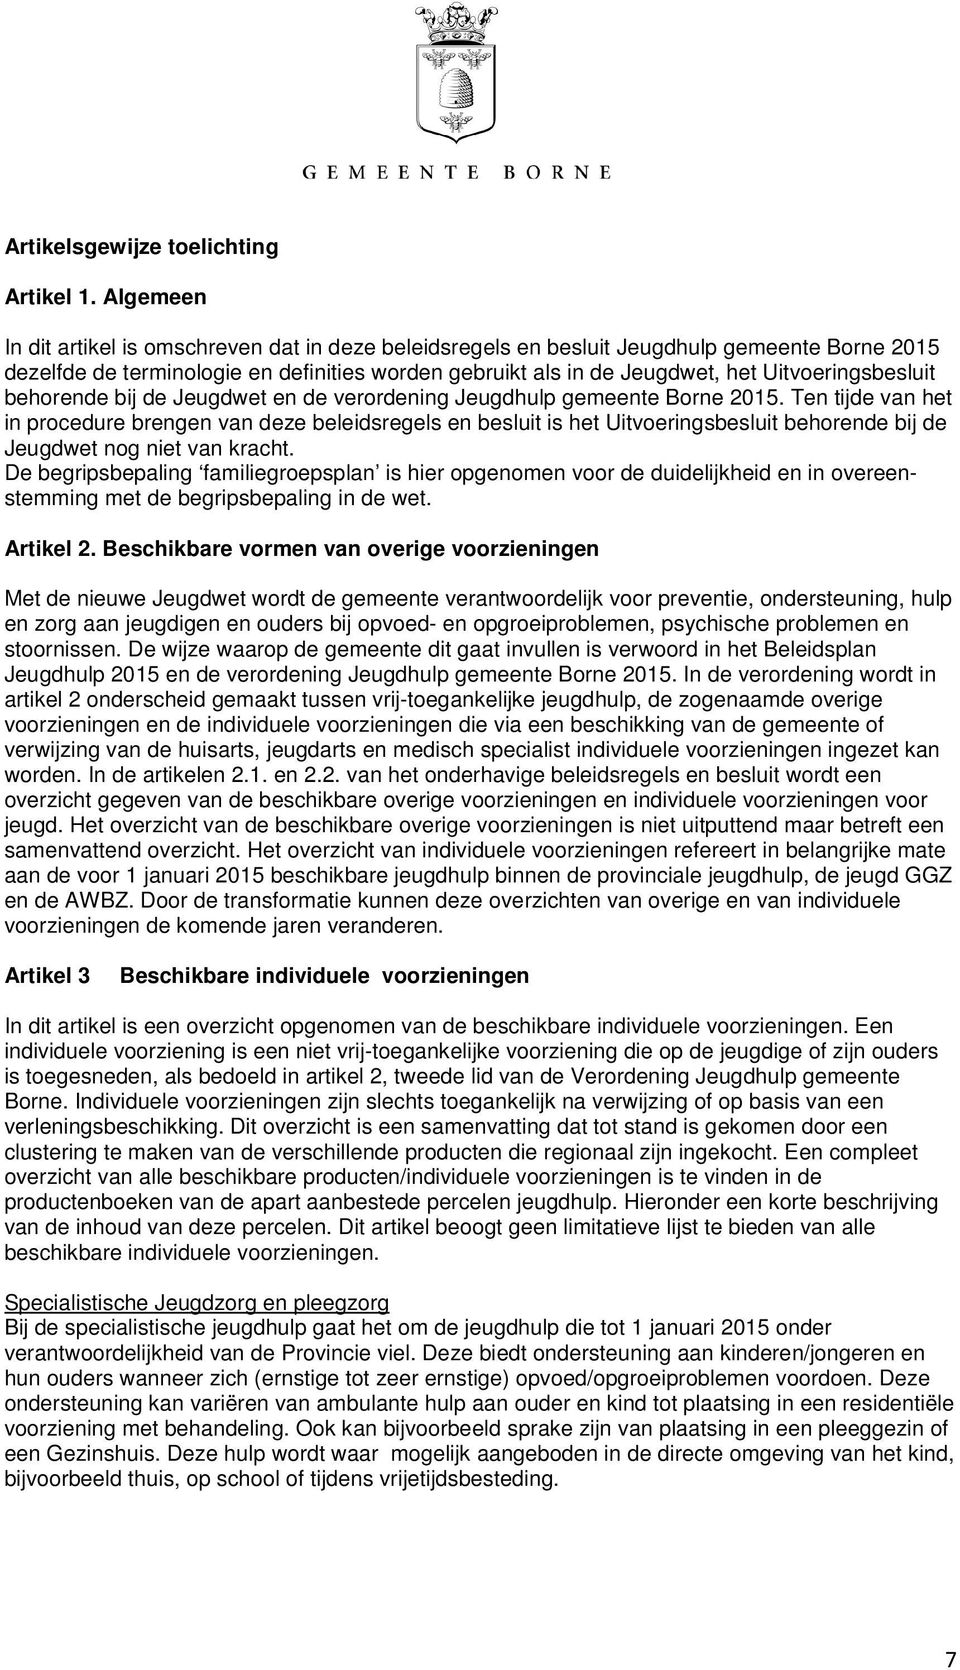 Uitvoeringsbesluit behorende bij de Jeugdwet en de verordening Jeugdhulp gemeente Borne 2015.